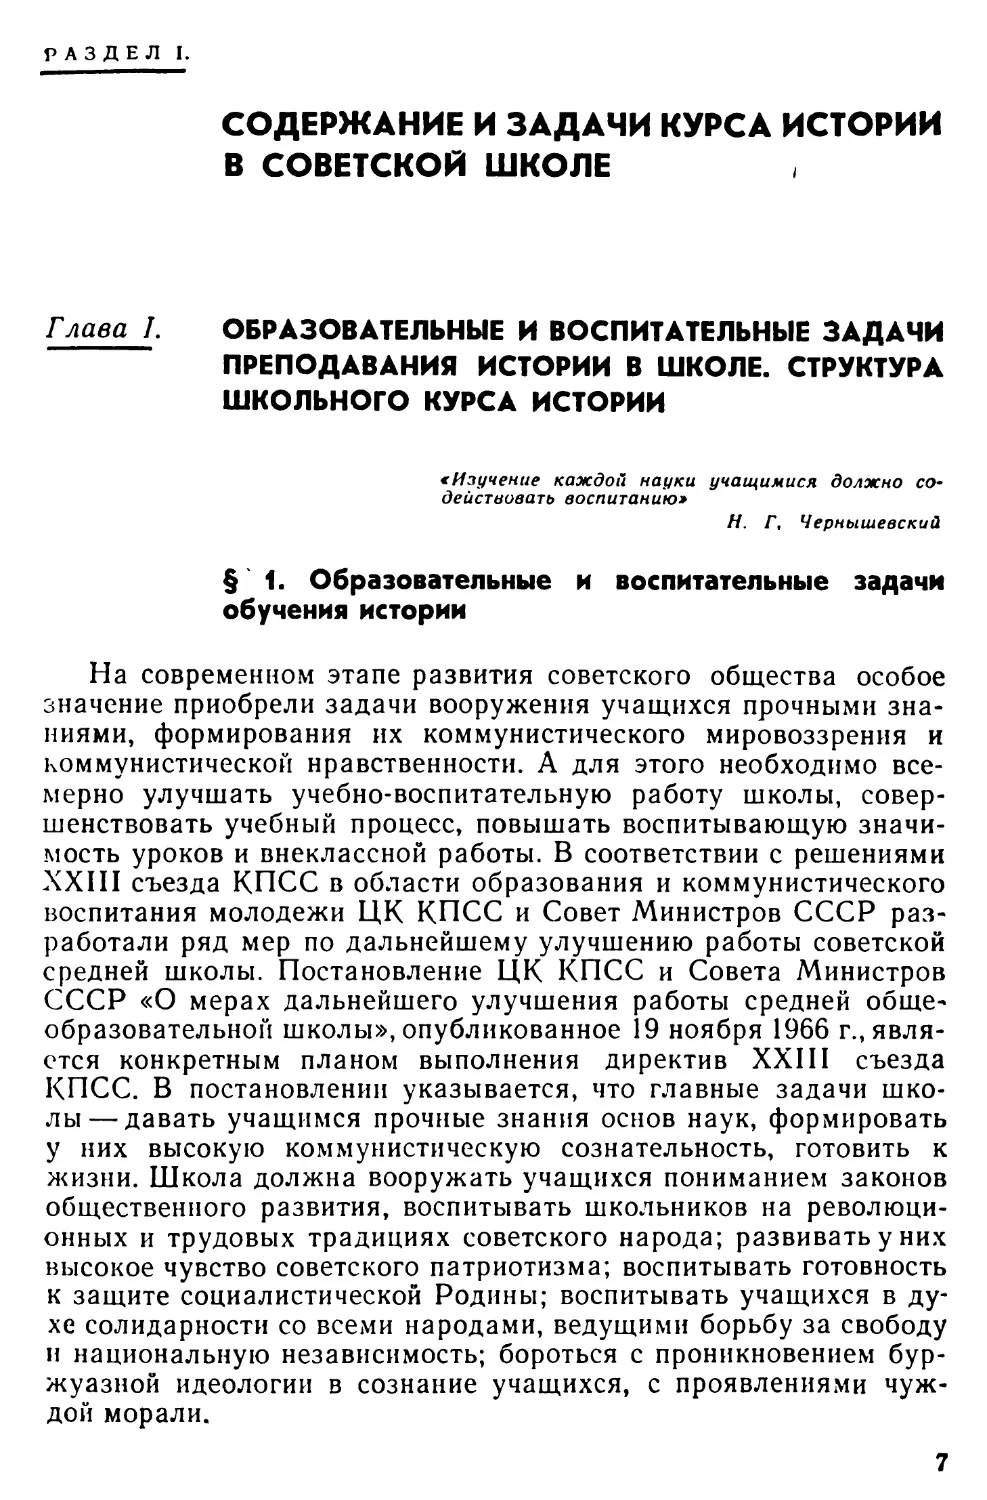 Раздел I. Содержание и задачи курса истории в советской школе